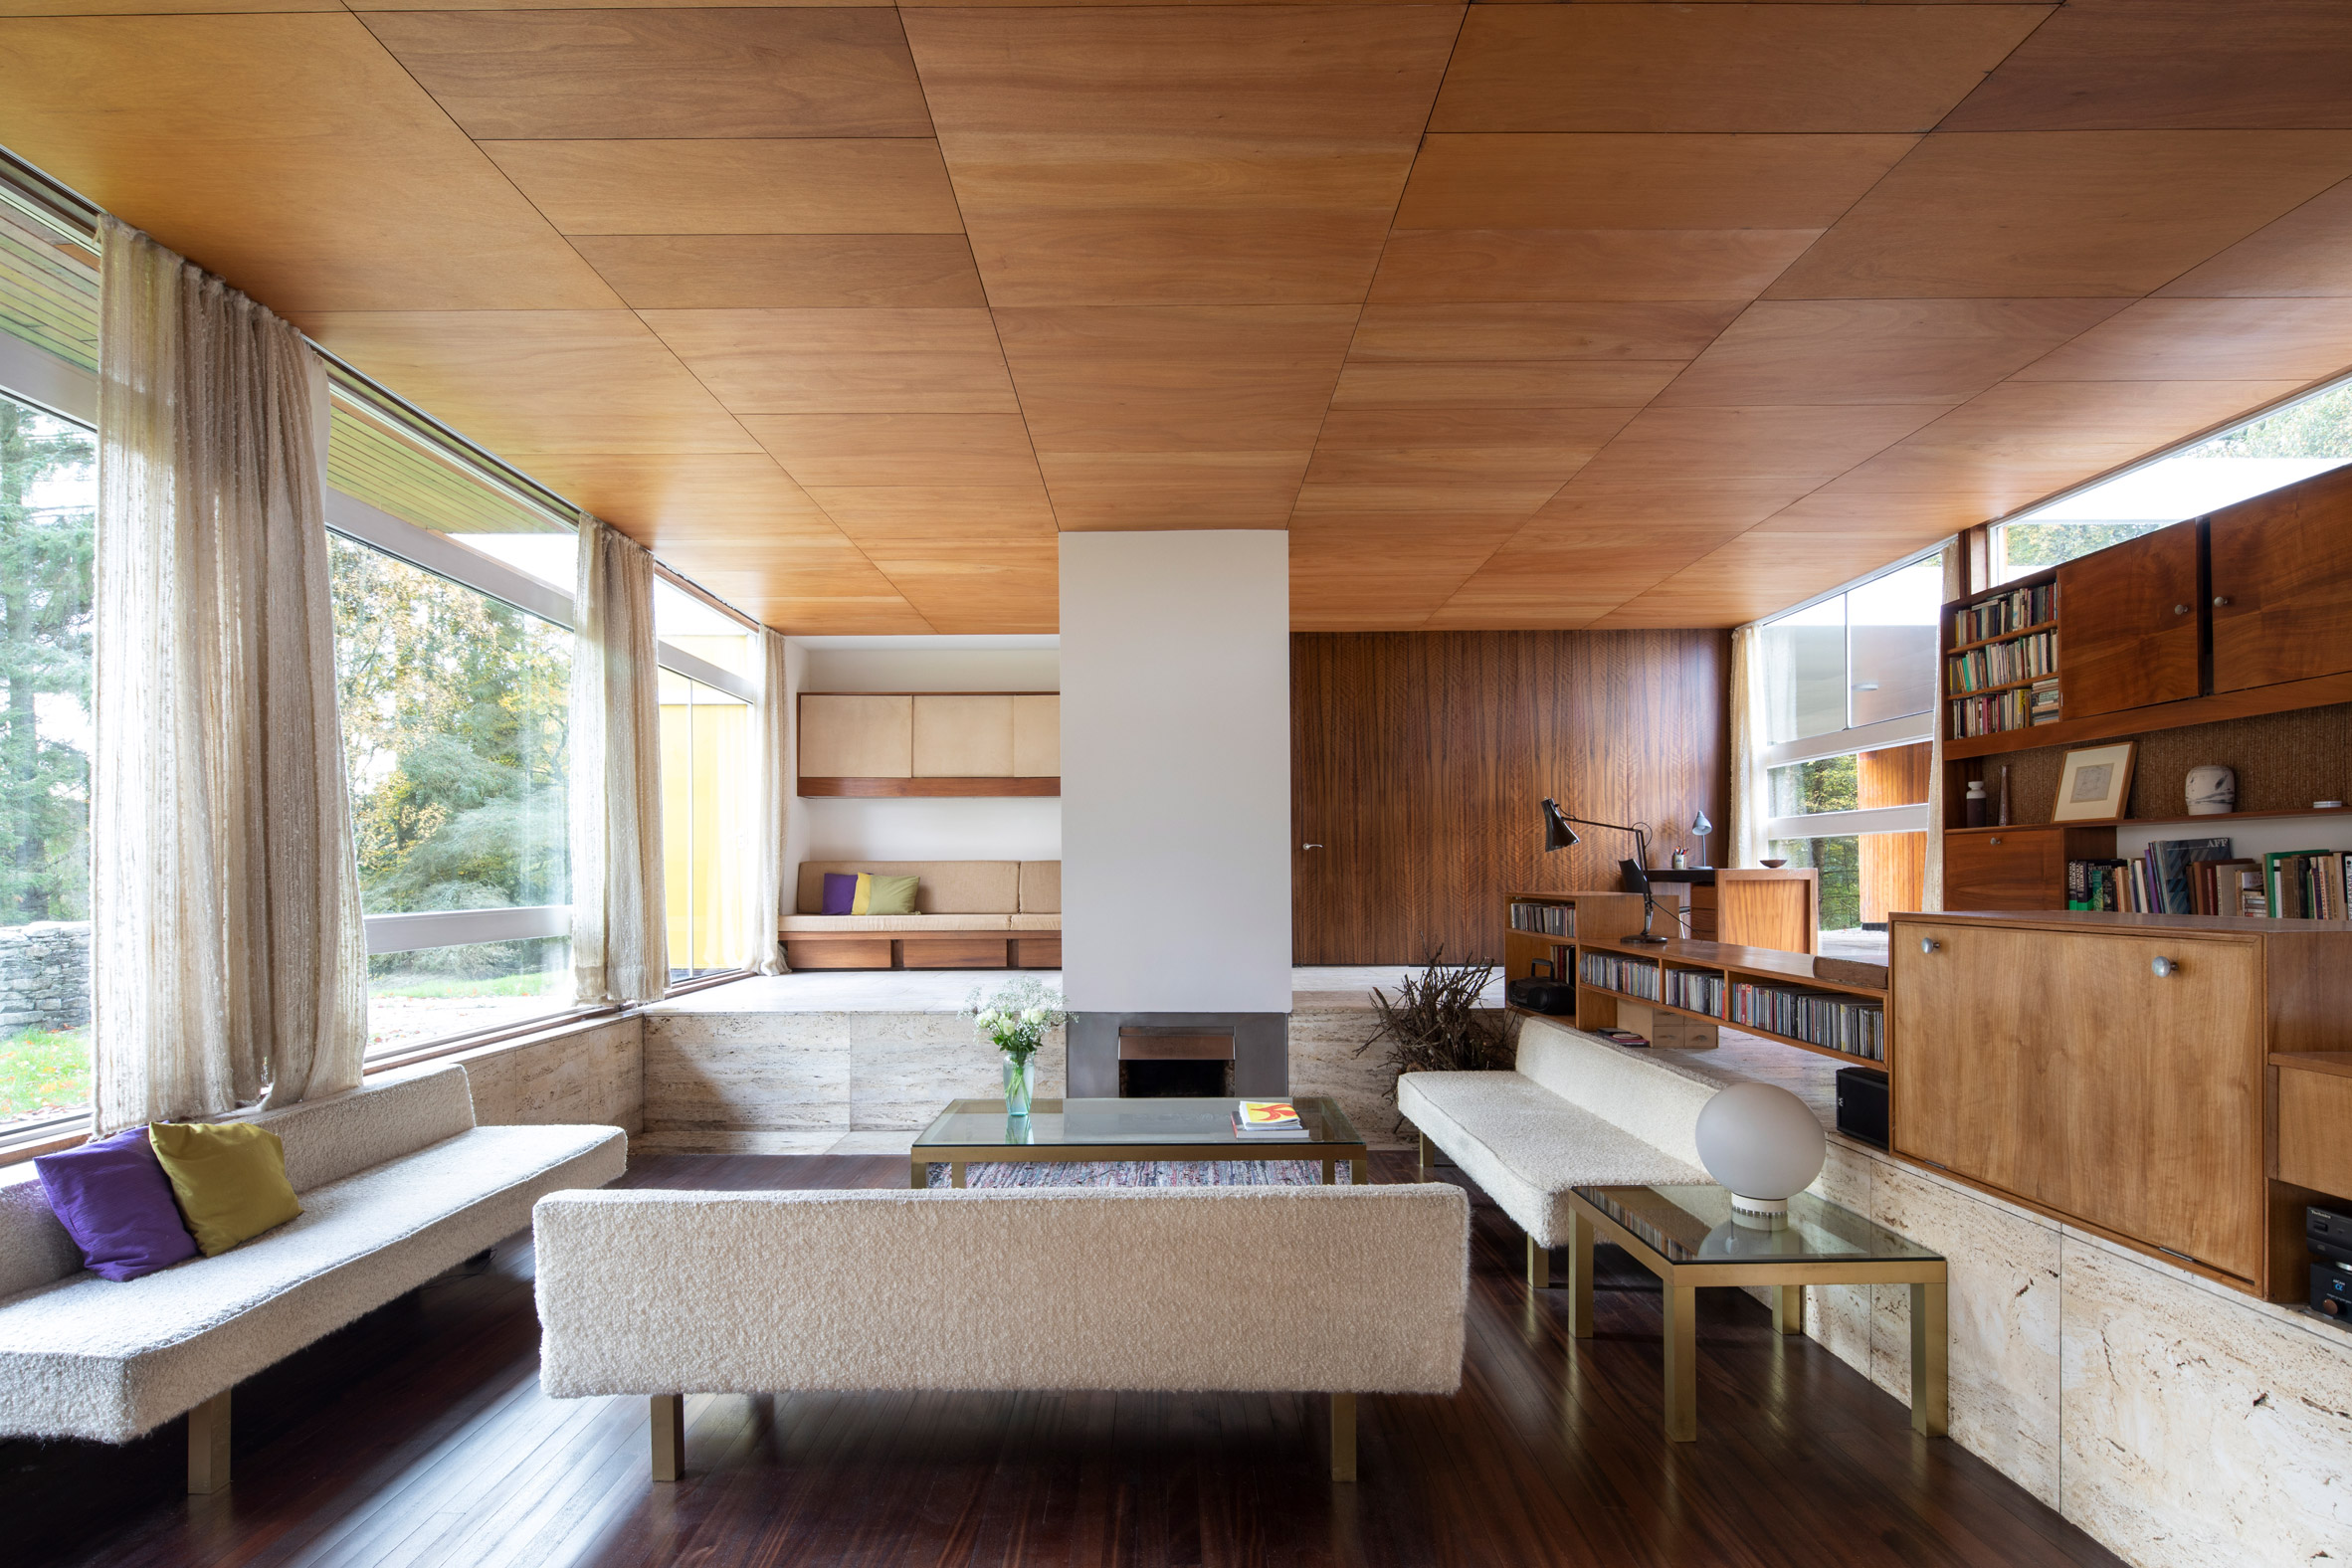 Modernist open-plan living room